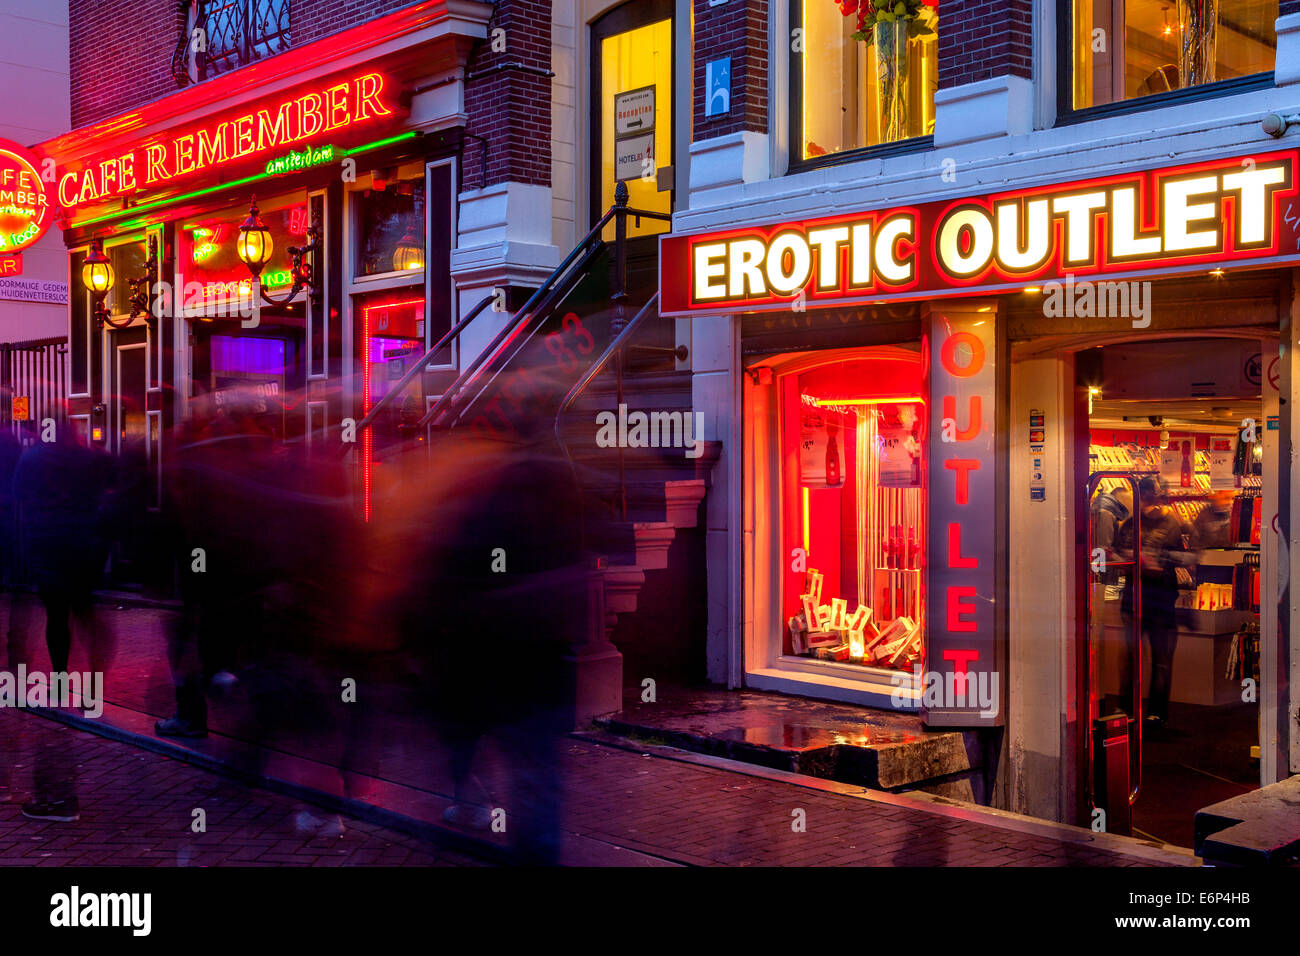 https://c8.alamy.com/comp/E6P4HB/sex-shop-the-red-light-district-amsterdam-holland-E6P4HB.jpg